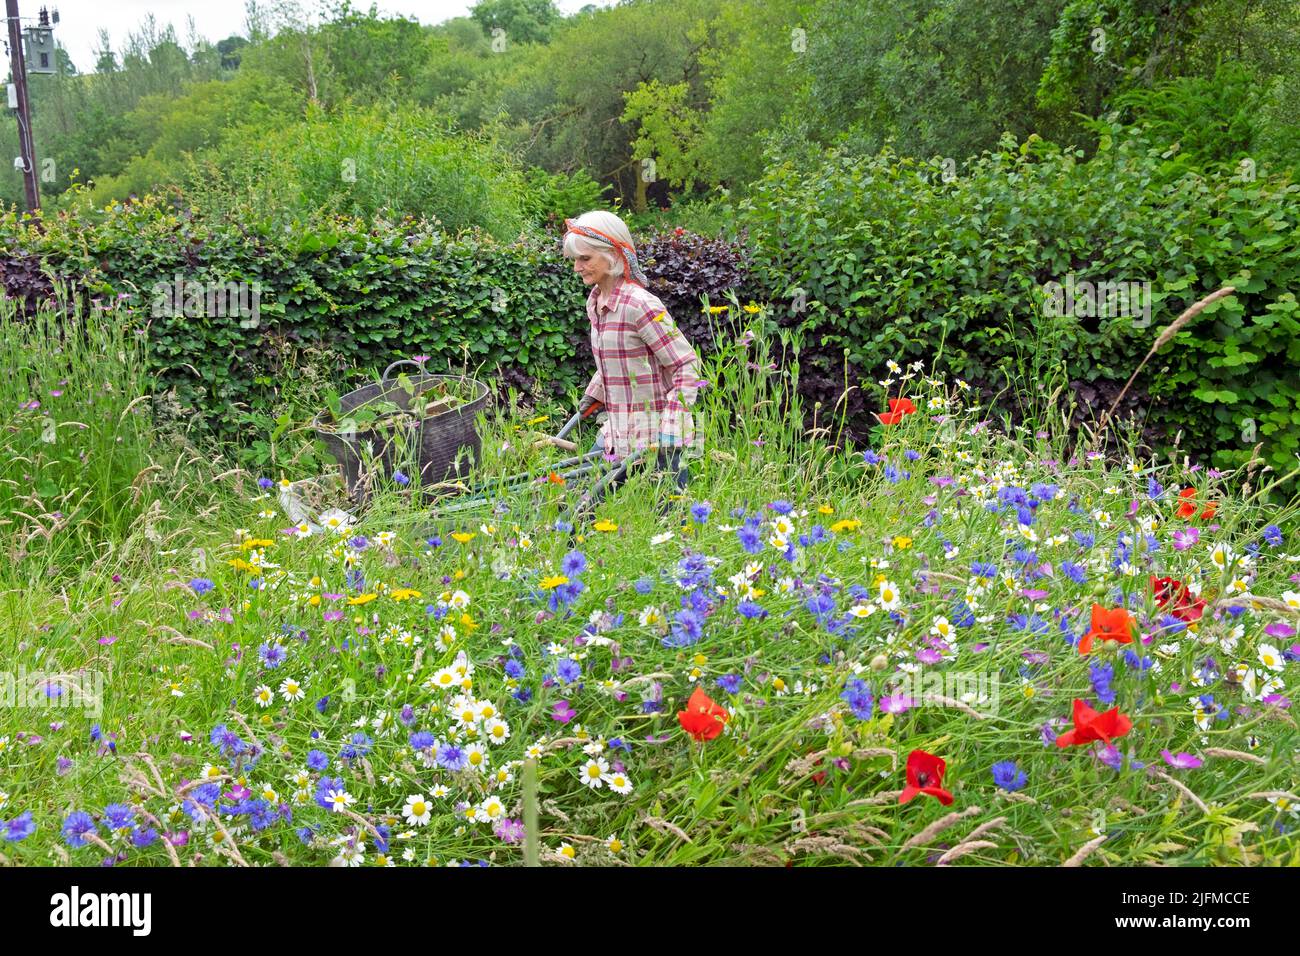 Femme âgée jardinant poussant brouette et prairie de fleurs sauvages en fleurs rouges coquelicots, pâquerettes, cornflowers en juillet jardin pays de Galles Royaume-Uni KATHY DEWITT Banque D'Images